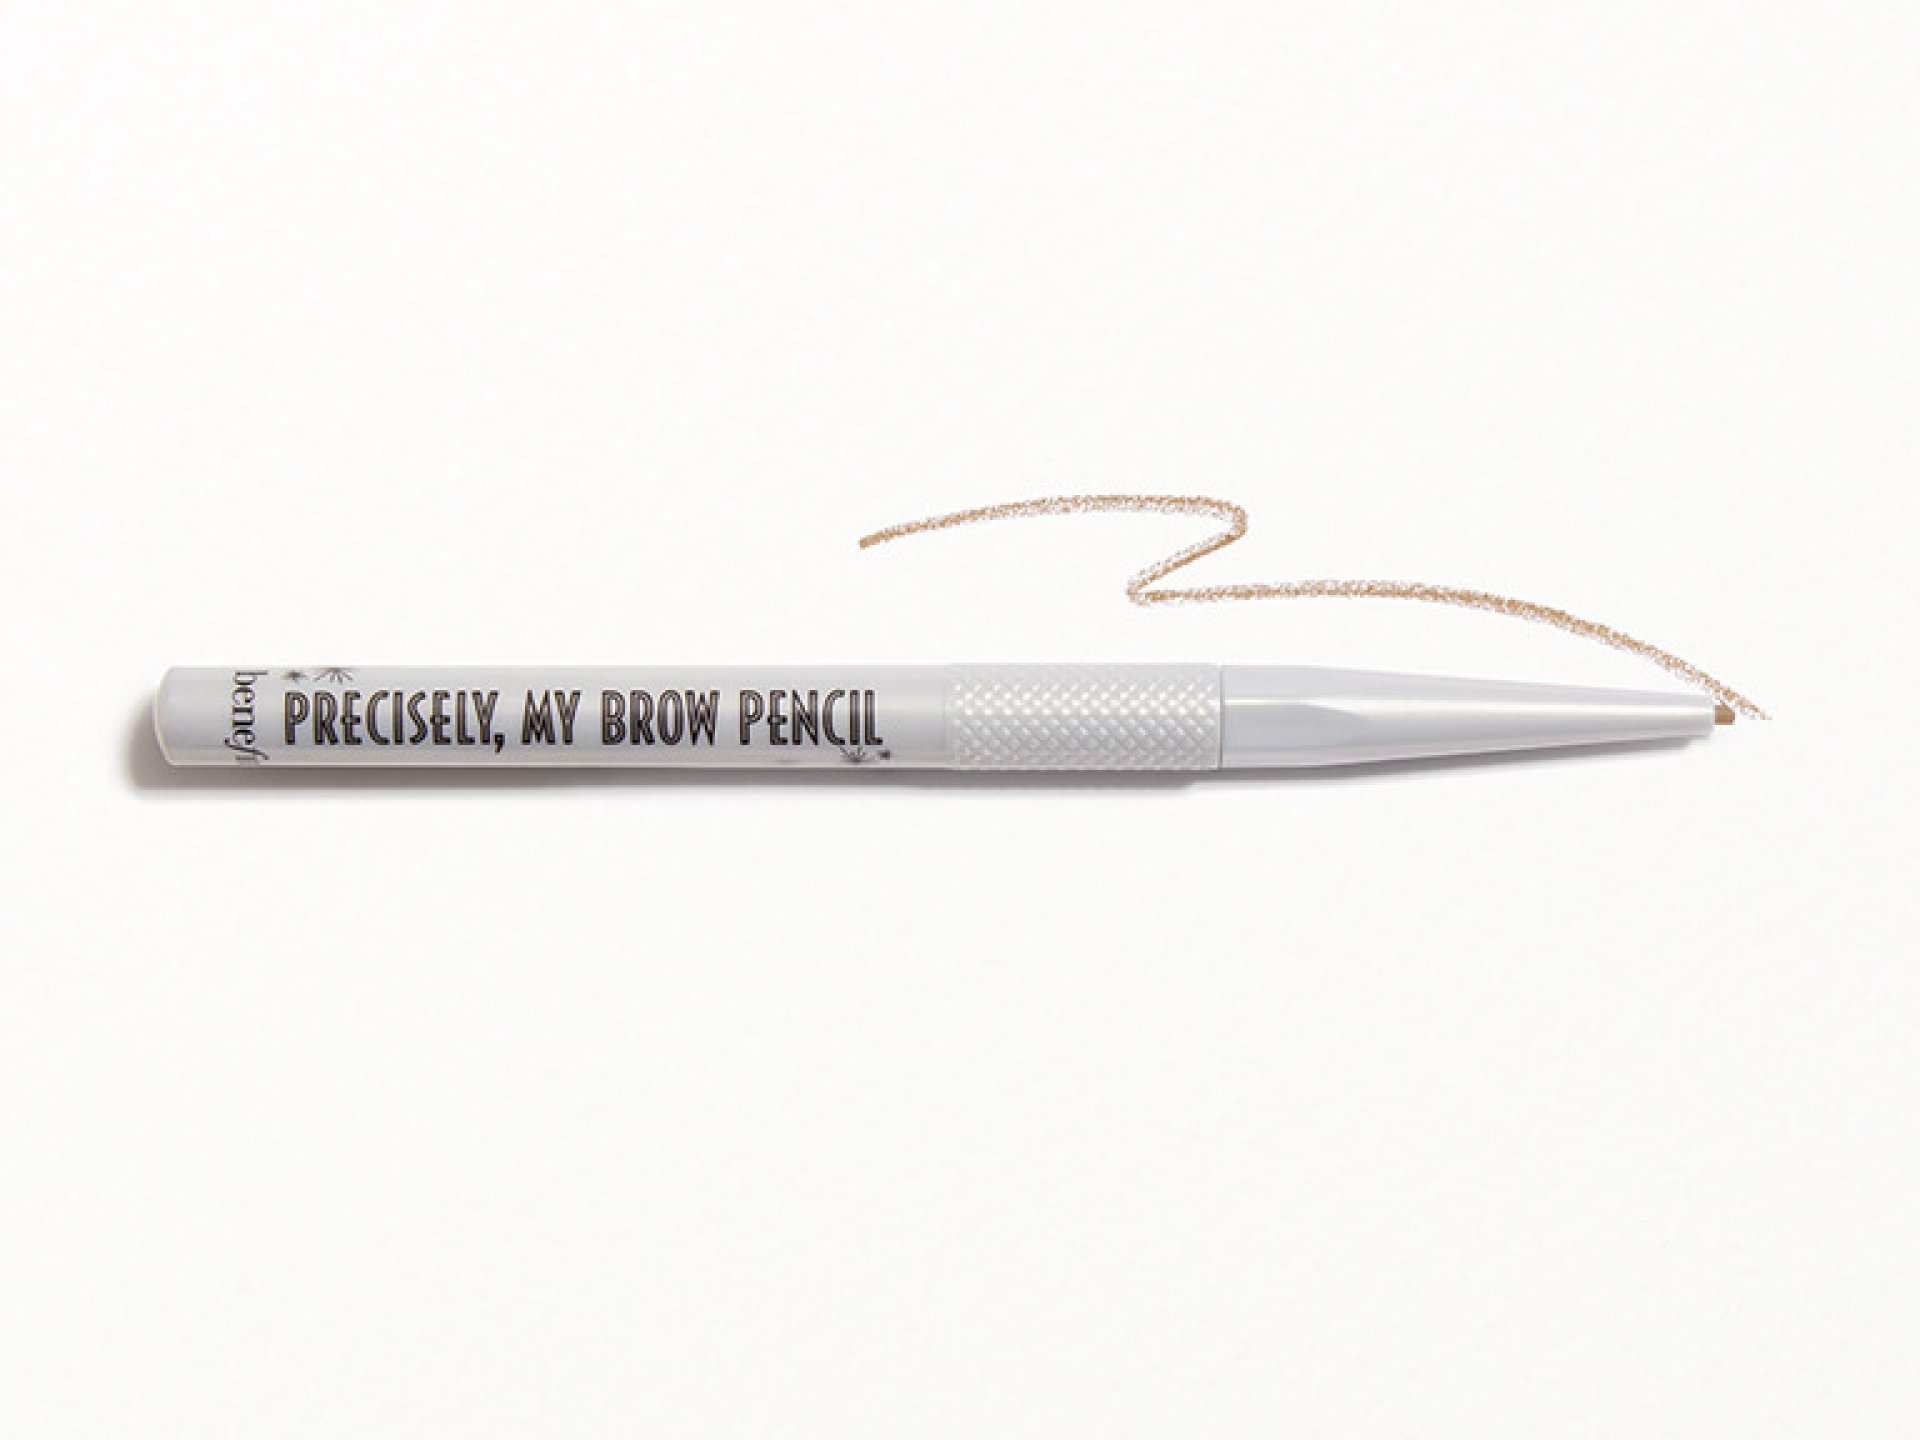 BENEFIT COSMETICS Precisely, My Brow Pencil Waterproof Eyebrow Definer in 2 - Warm Golden Blonde